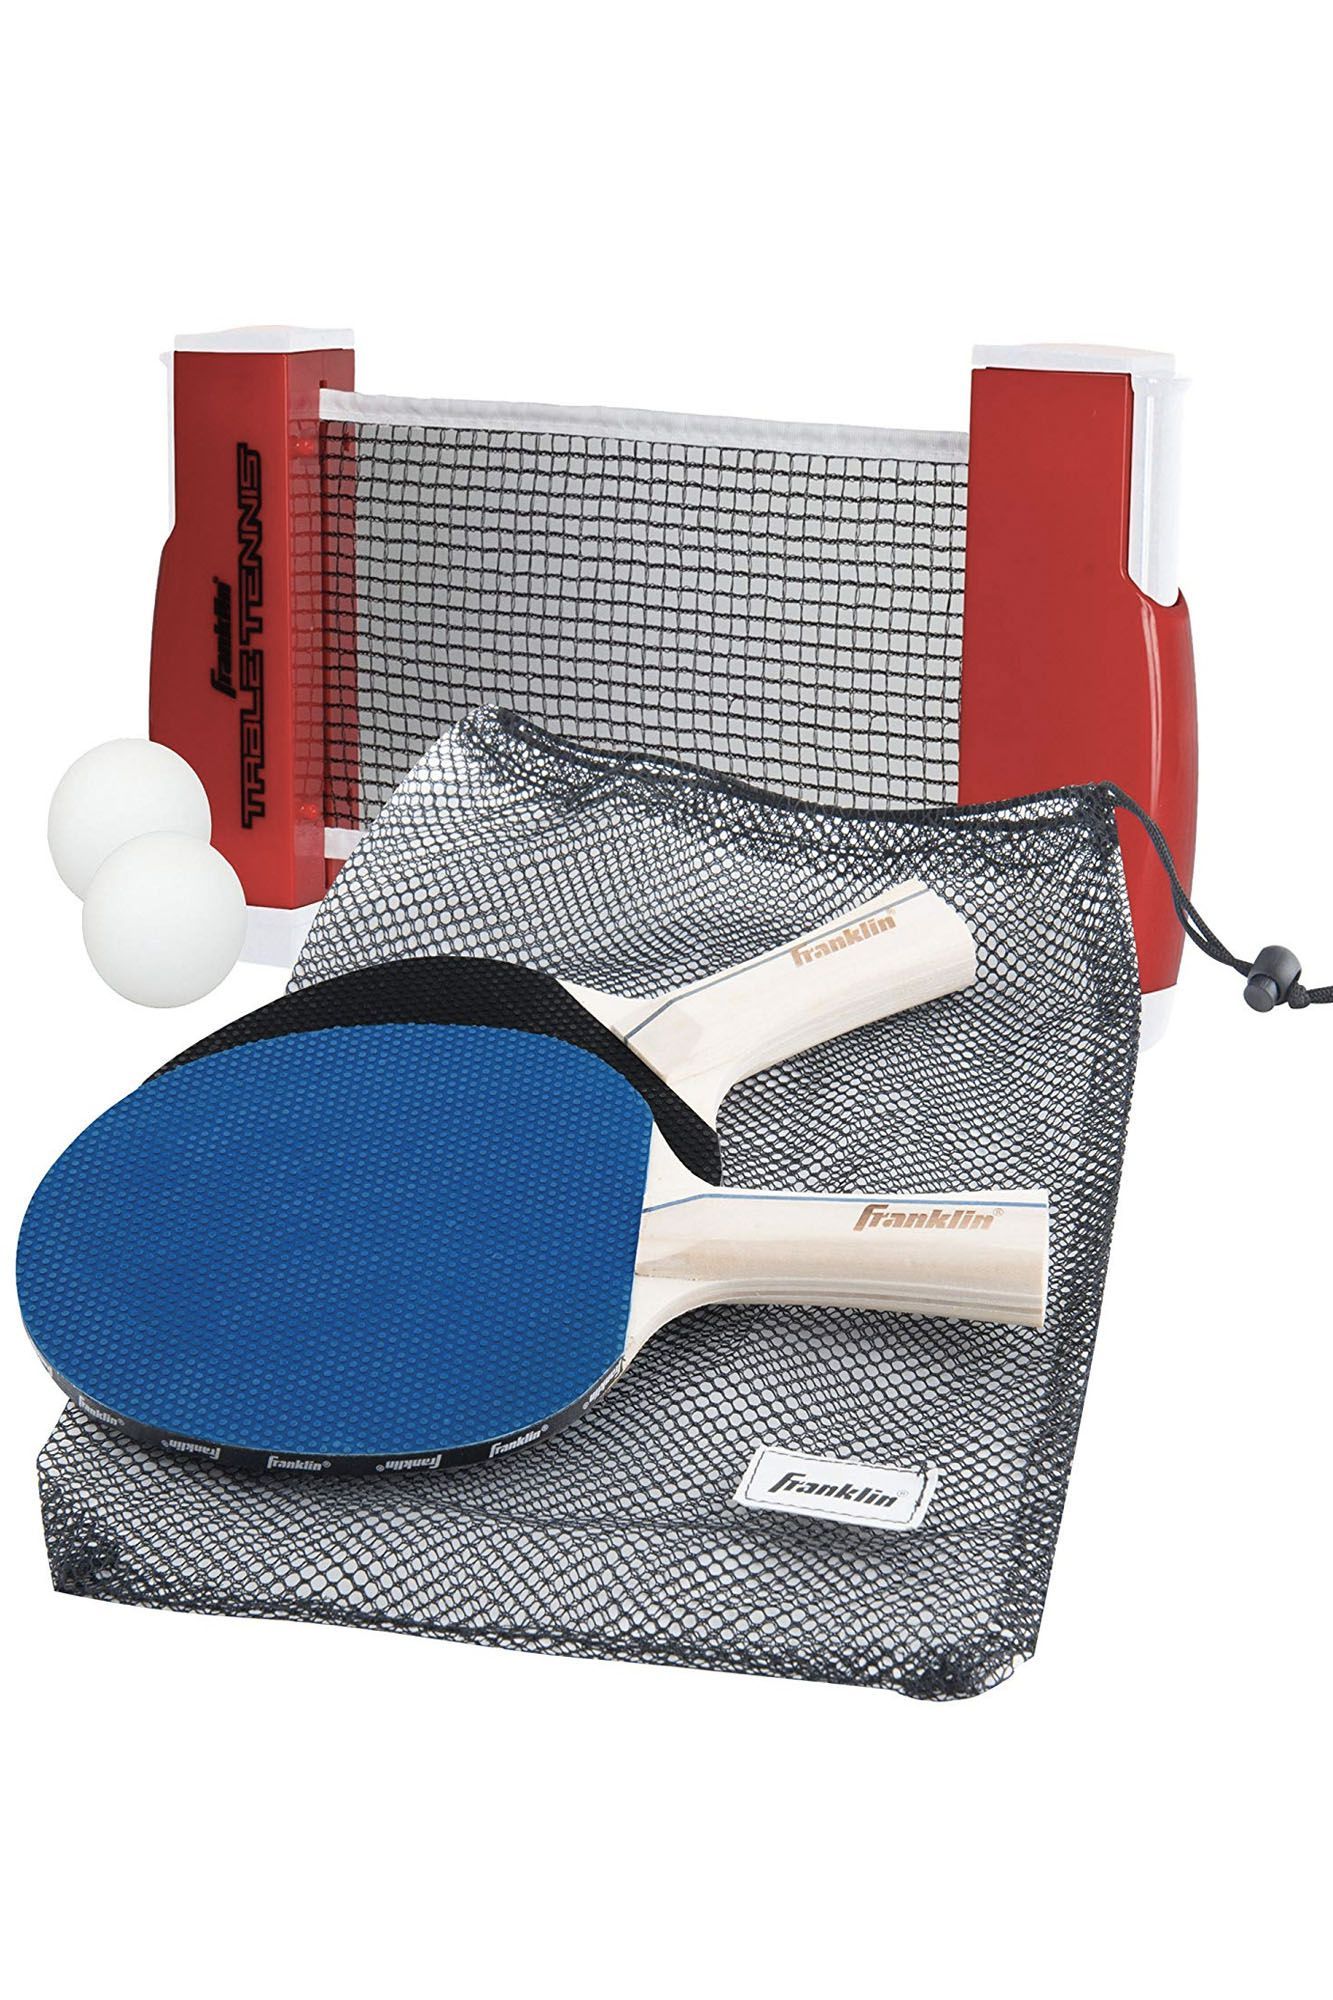 Крепление для настольного тенниса. ARTENGO 700 ракетка для настольного тенниса. Набор д/настольного тенниса (ракетка 2шт,шар 3шт). Набор для настольный теннис Ping - Pong. Ракетка настольного тенниса start Level 200.